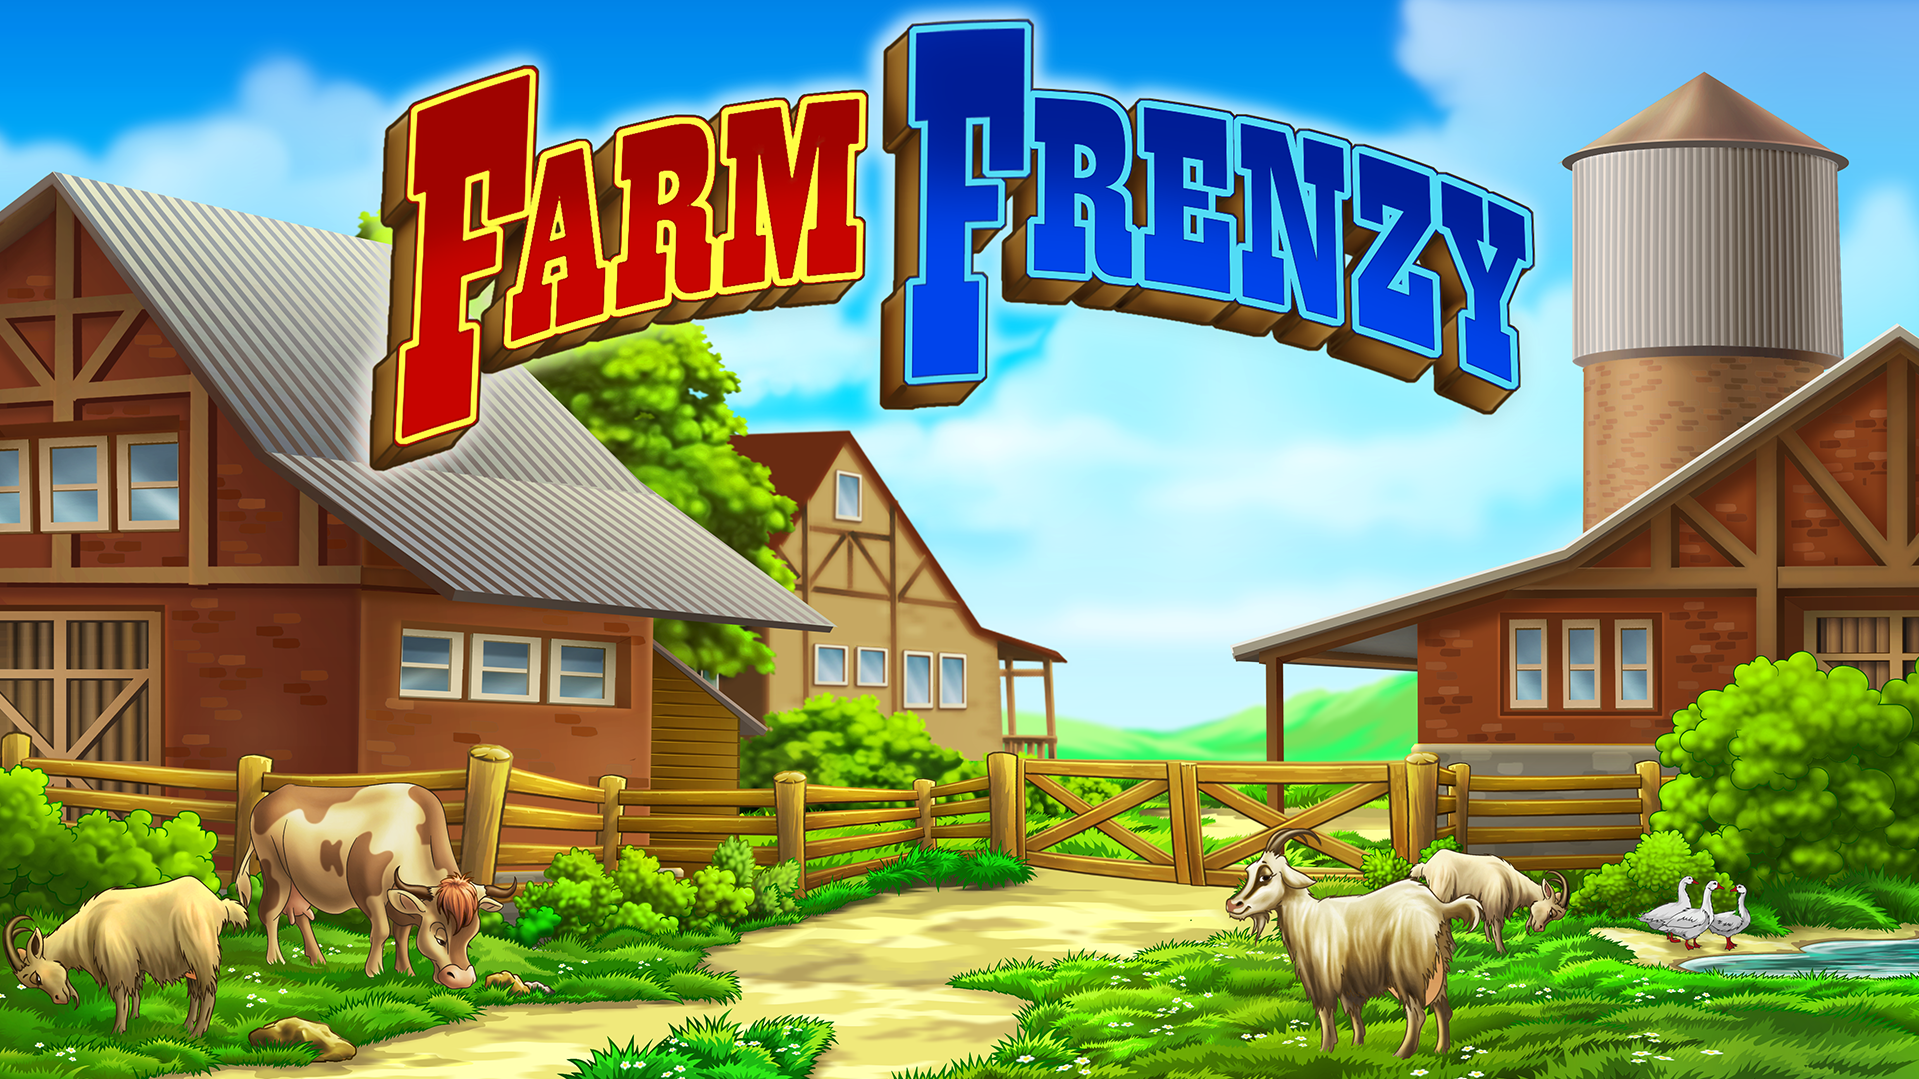 Screenshot 1 of Farm Frenzy: Happy Village gần Big Town 0.8